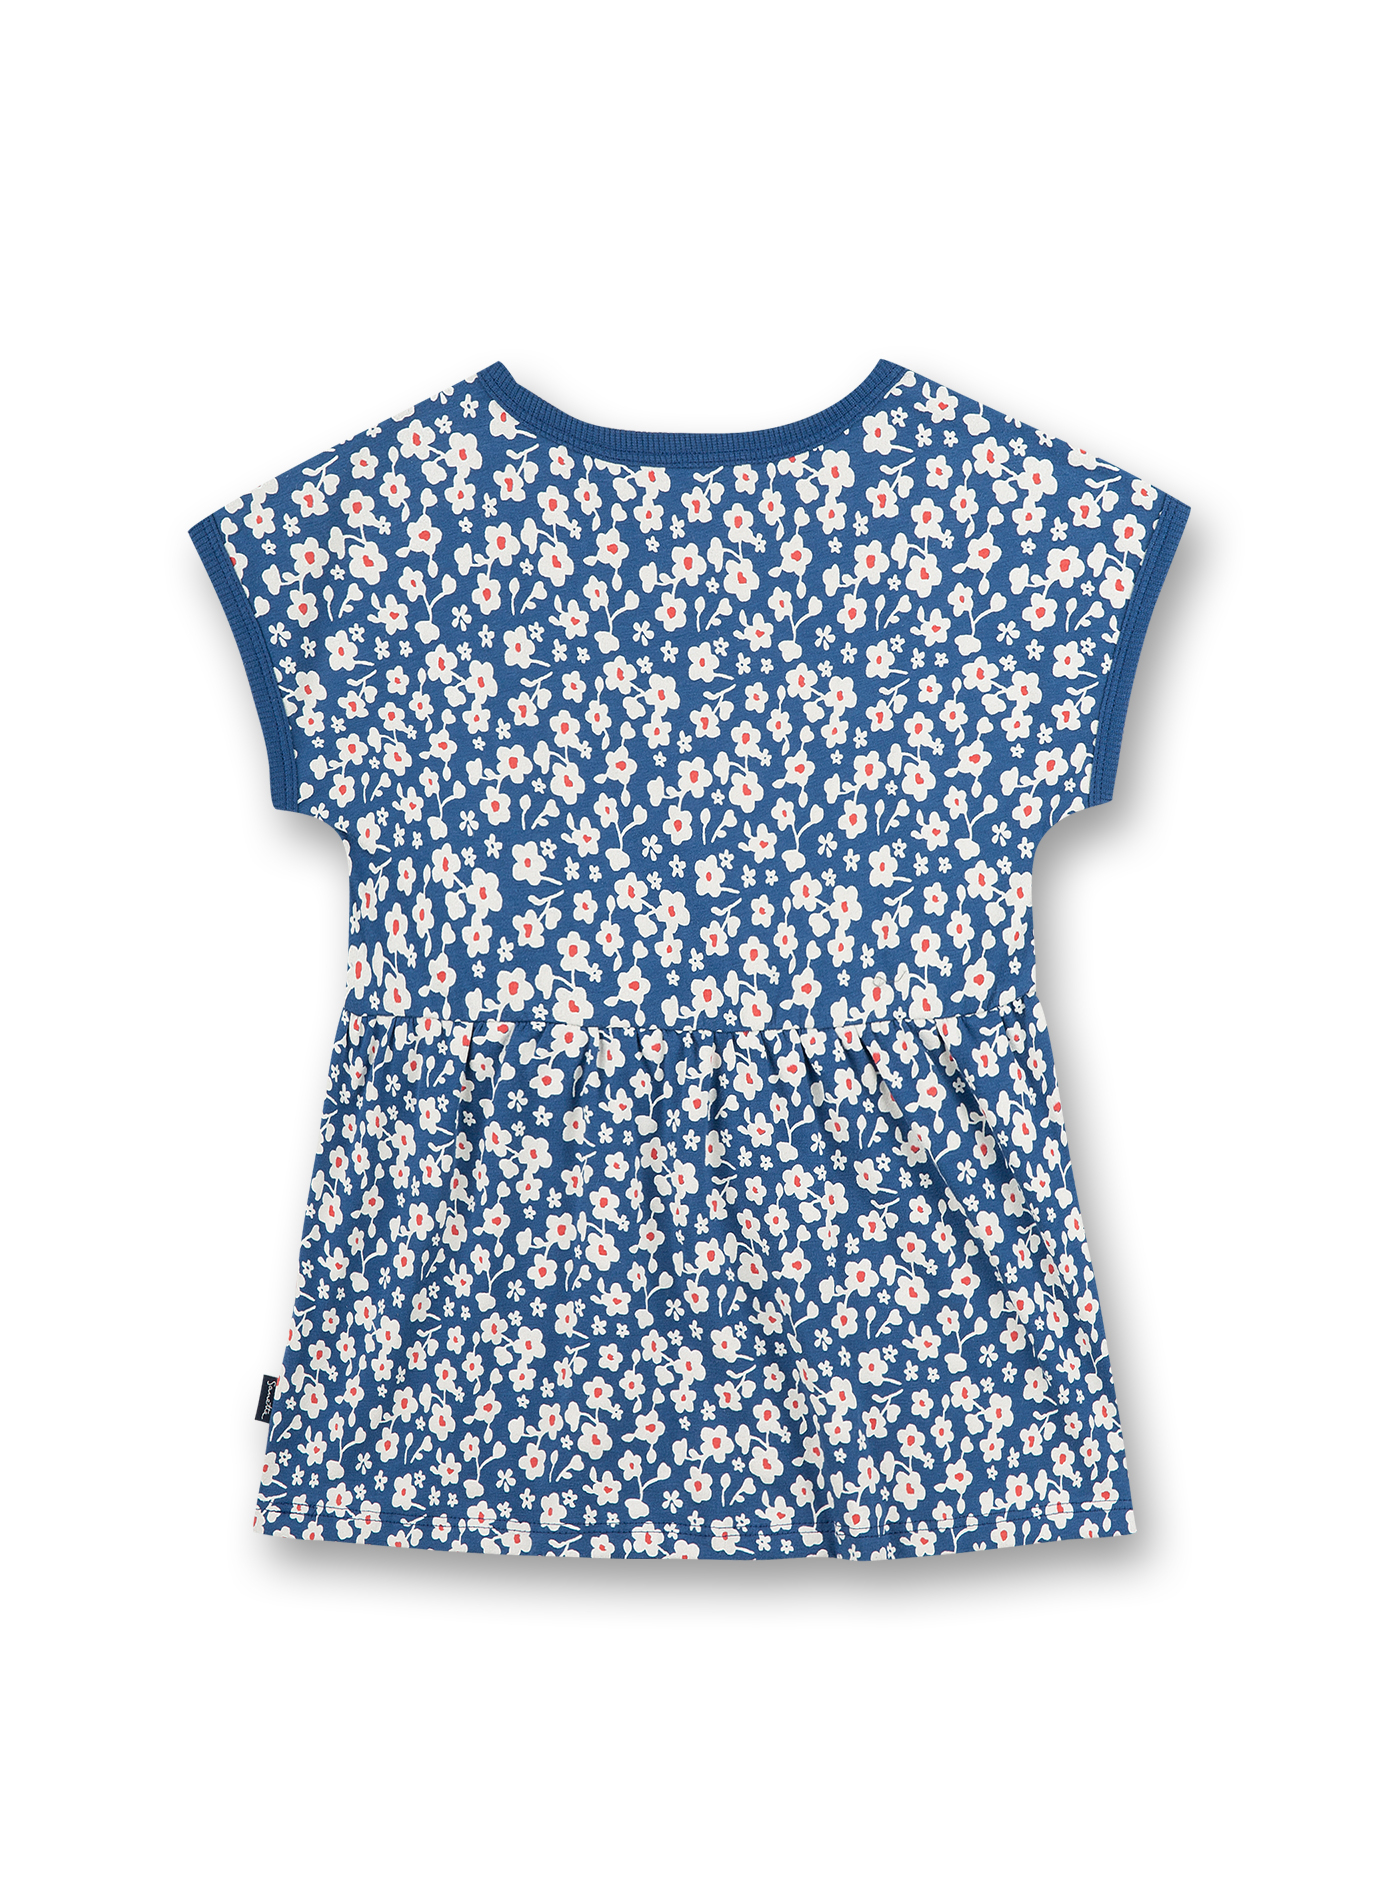 Mädchen T-Shirt Blau Blumenallover Strawberry